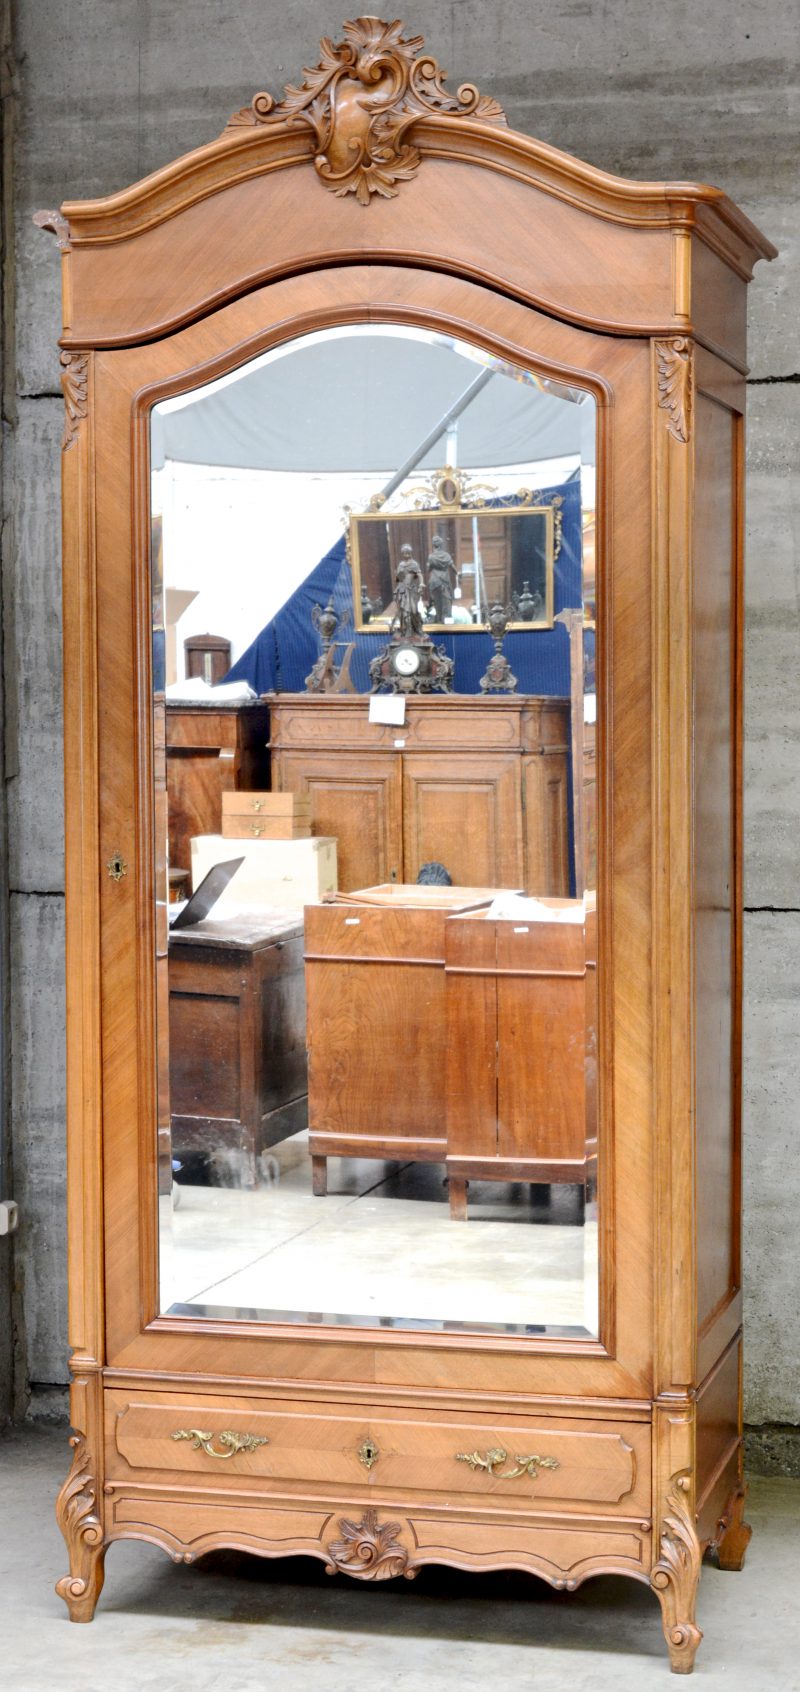 Eéndeurs spiegelkast van mahonie in Louis-Philippestijl. Omstreeks 1900.